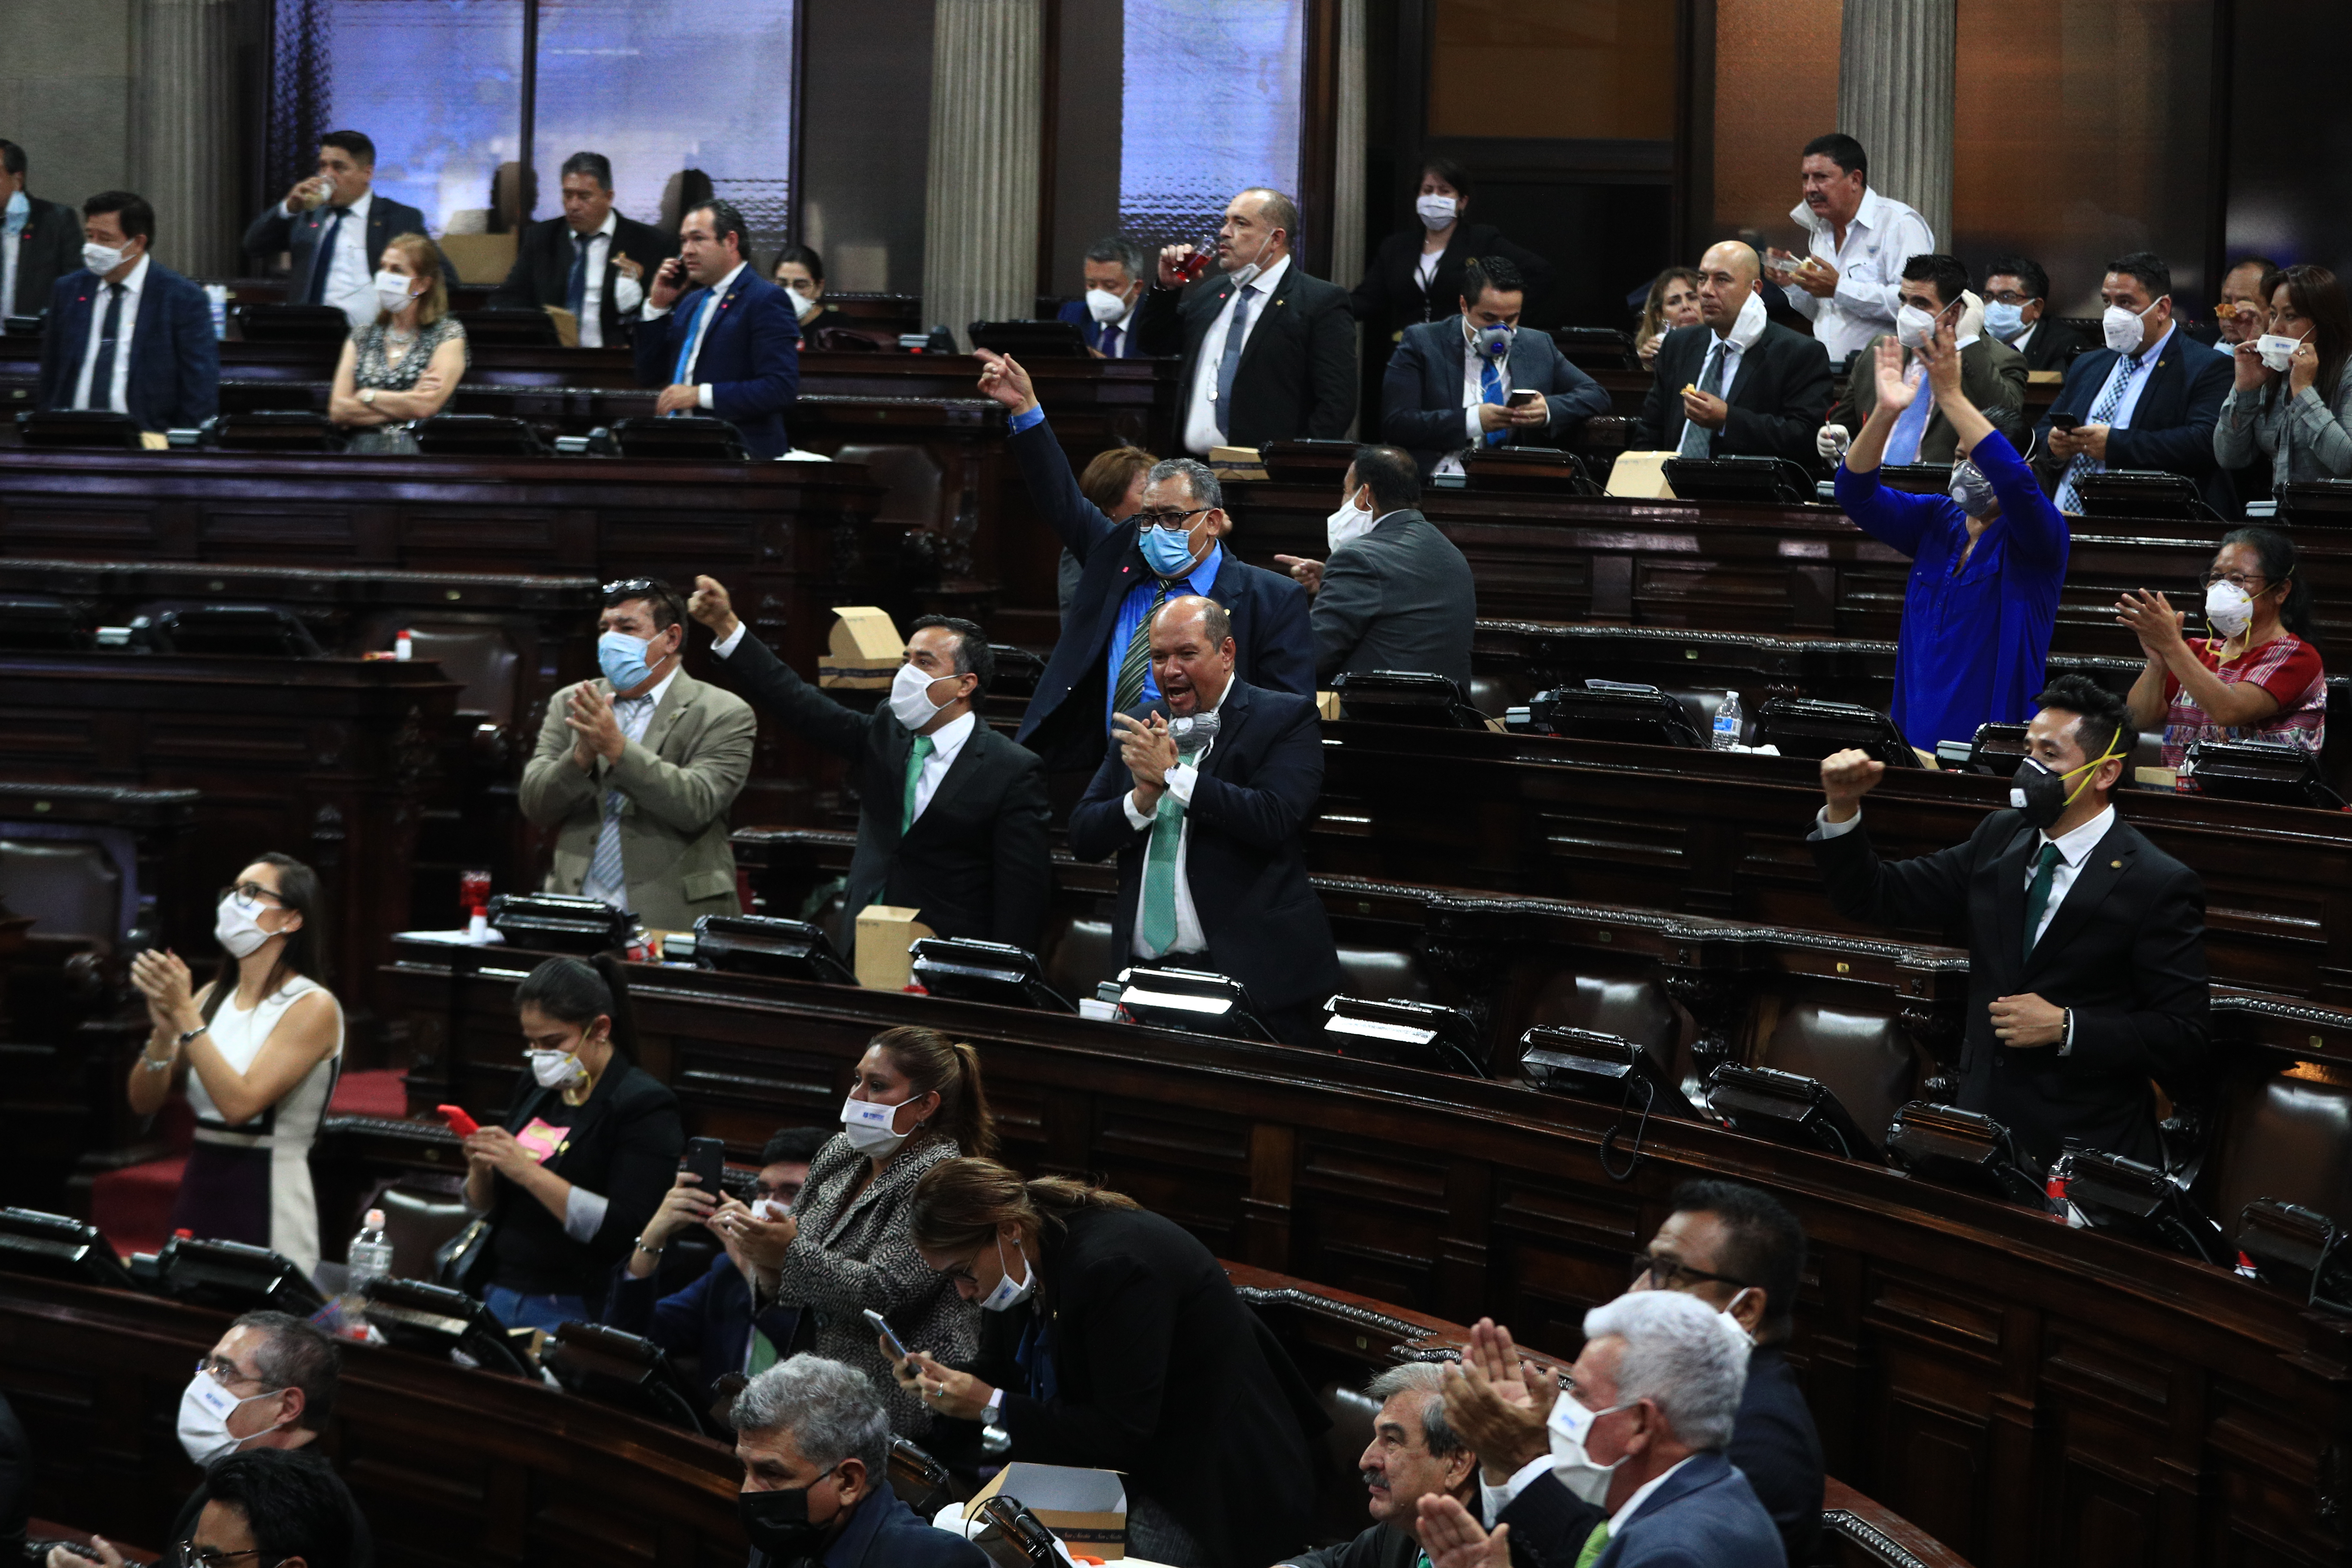 Sesión Plenaria en el Congreso de la República, diputados votan a favor y rechazan veto del decreto 15-2020.

foto Carlos Hernndez
30/04/2020